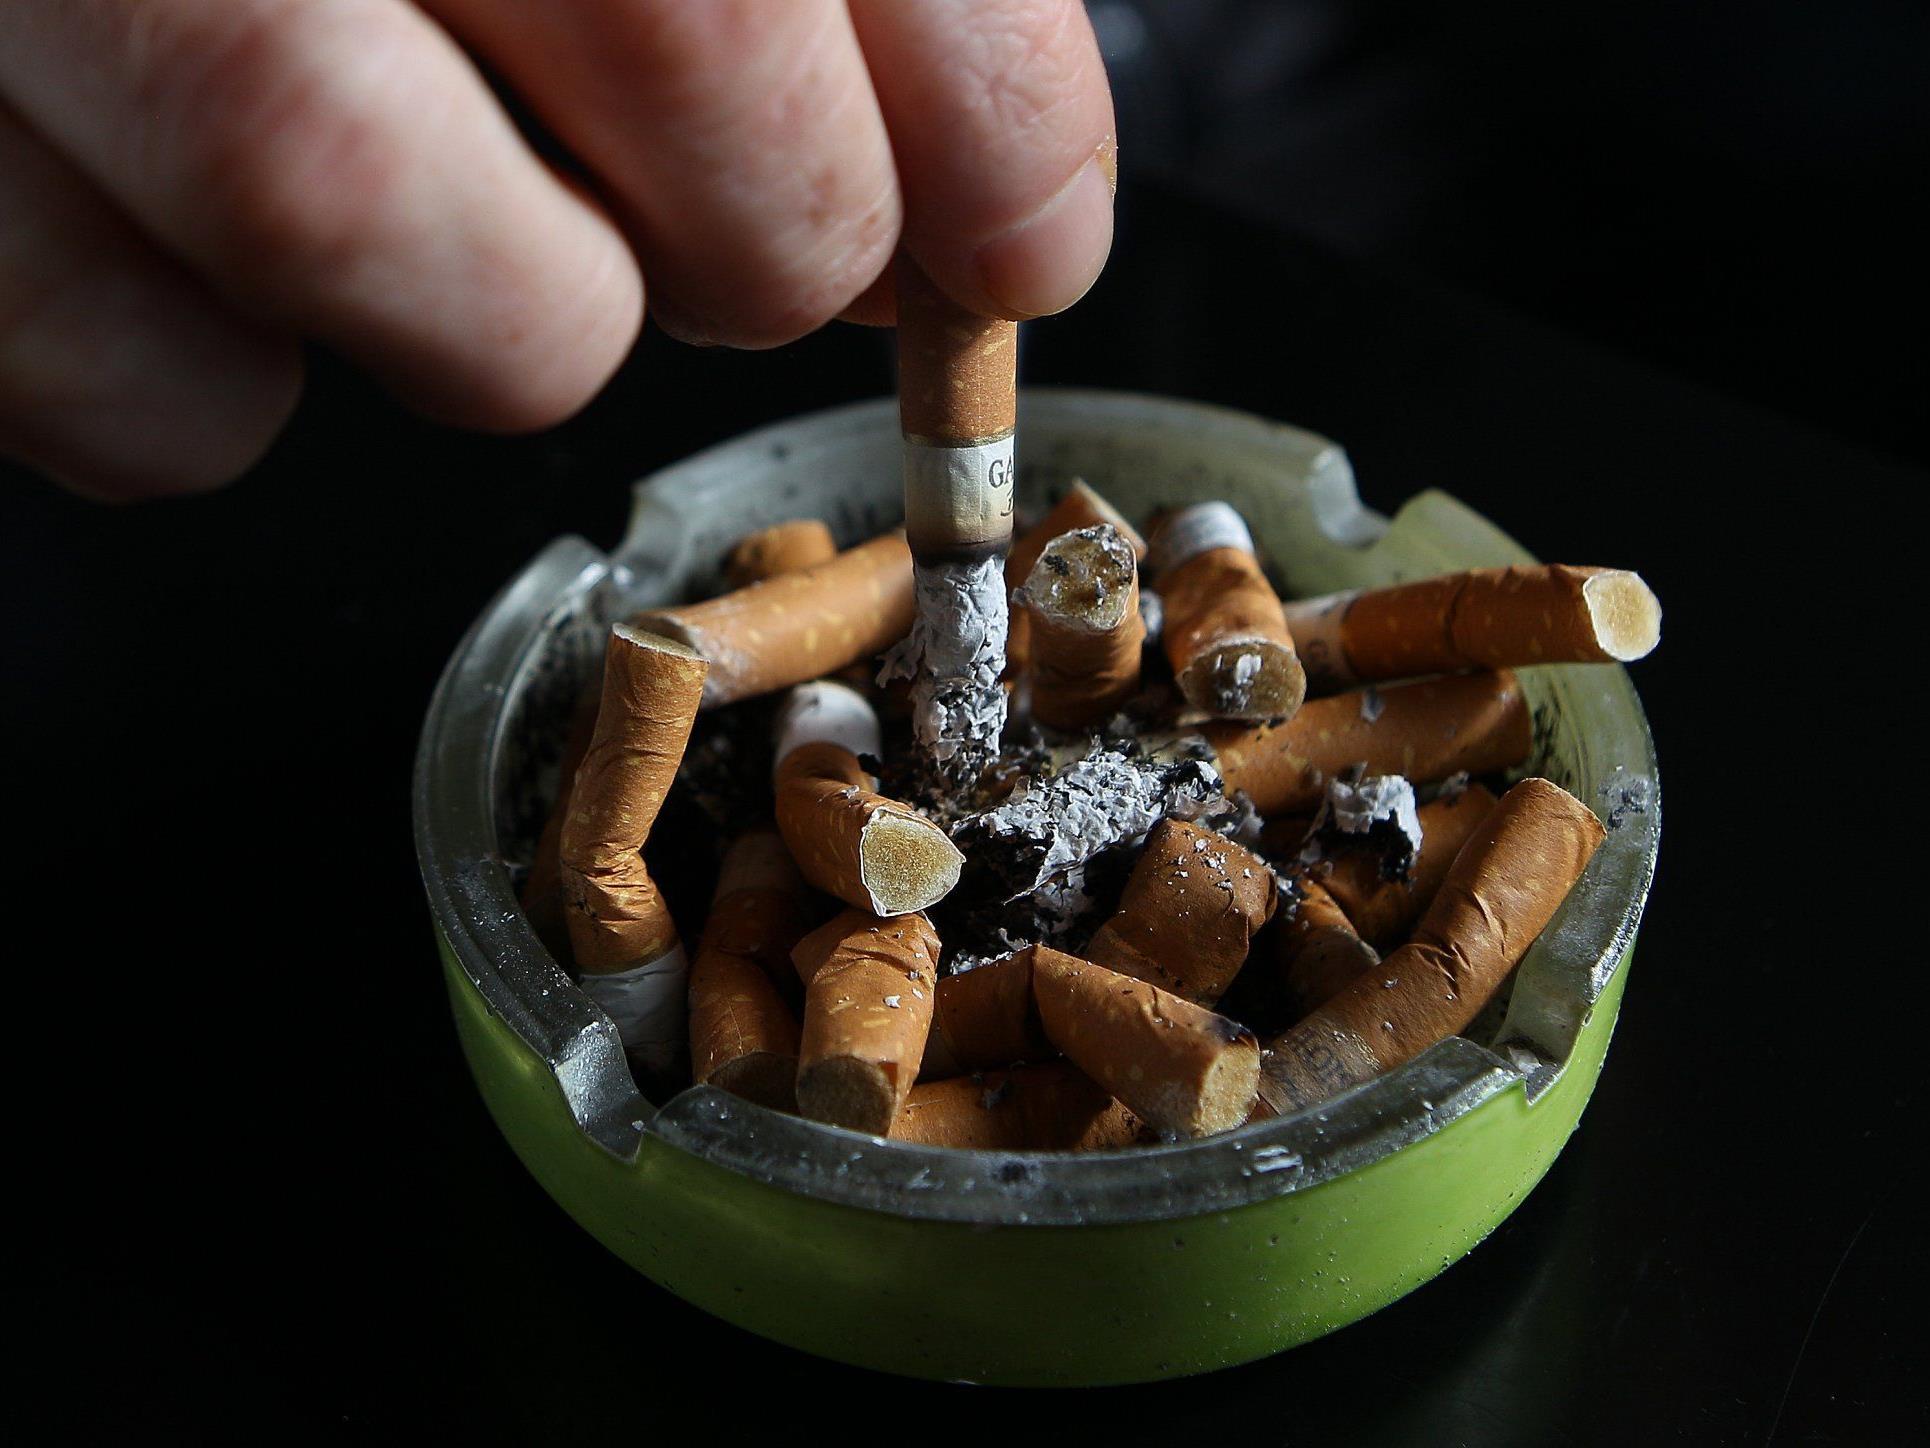 Raucherinnen erleiden laut deutscher Statistik einen größeren Verlust an Lebensjahren